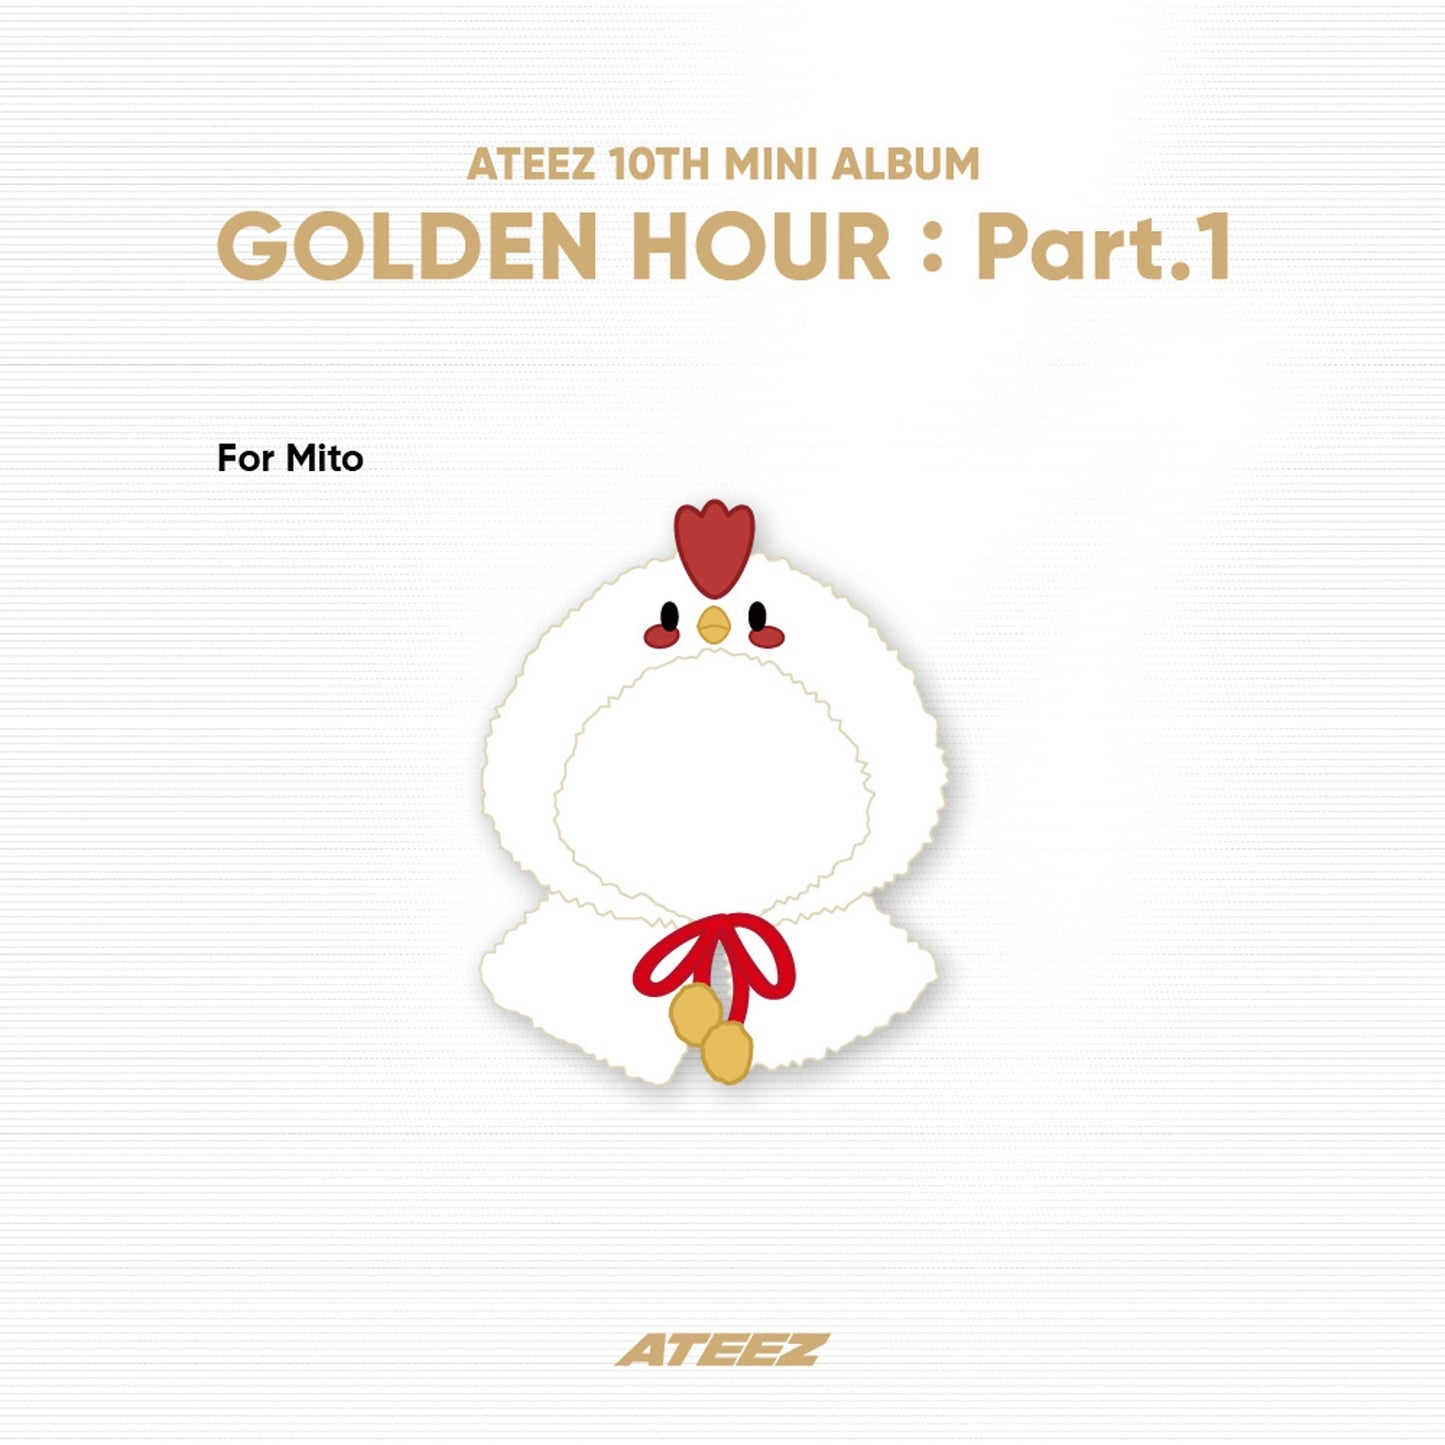 [PRE ORDER] ATEEZ 10TH MINI ALBUM [GOLDEN HOUR : Part.1] POP-UP EXHIBITION & STORE - OFFICIAL MERCH 1st LINE UP